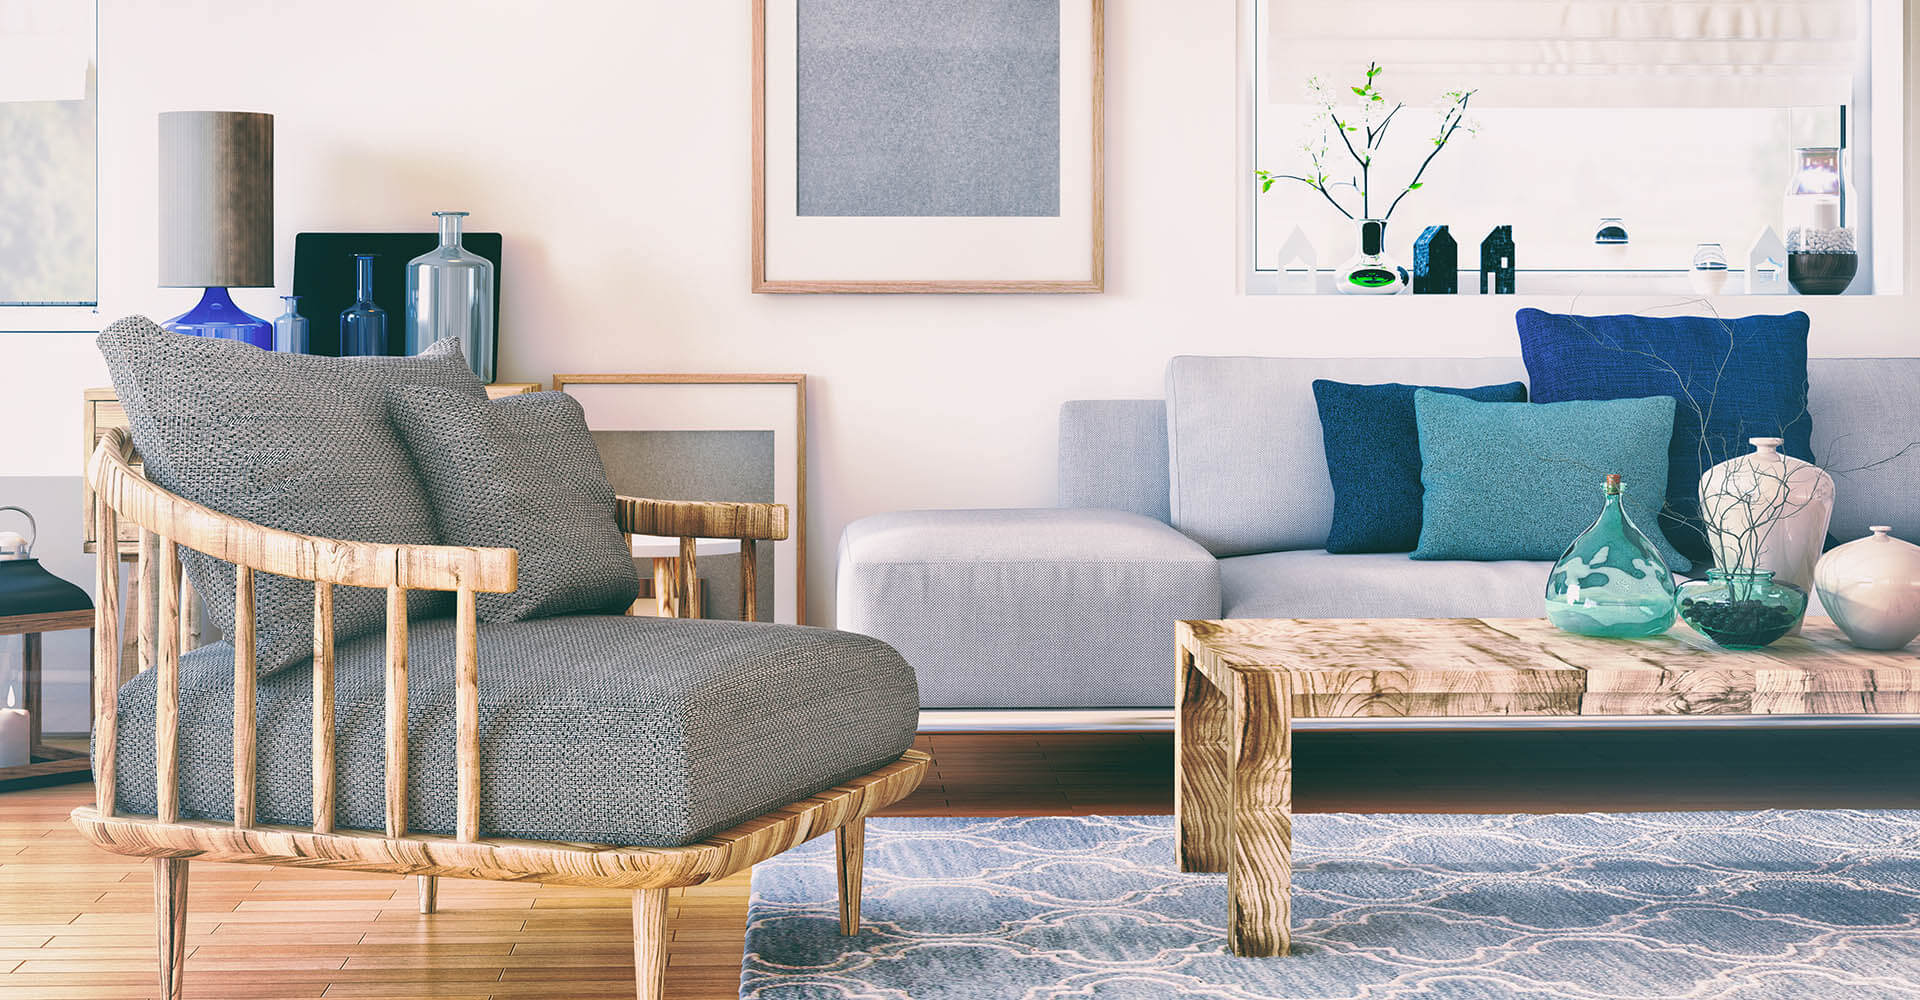 Wohnzimmer mit Couch, Sessel und Tisch in starken Pastellfarben eingerichtet